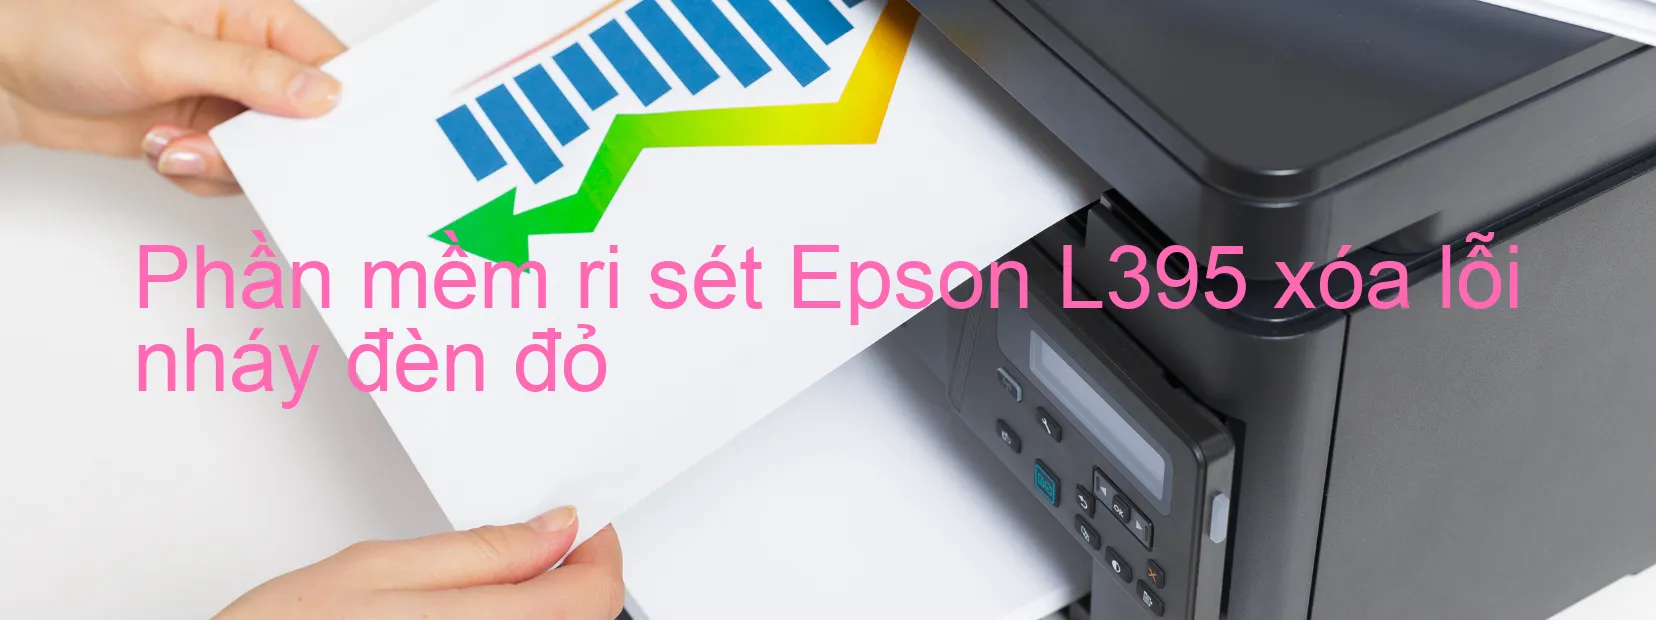 Phần mềm reset Epson L395 xóa lỗi nháy đèn đỏ